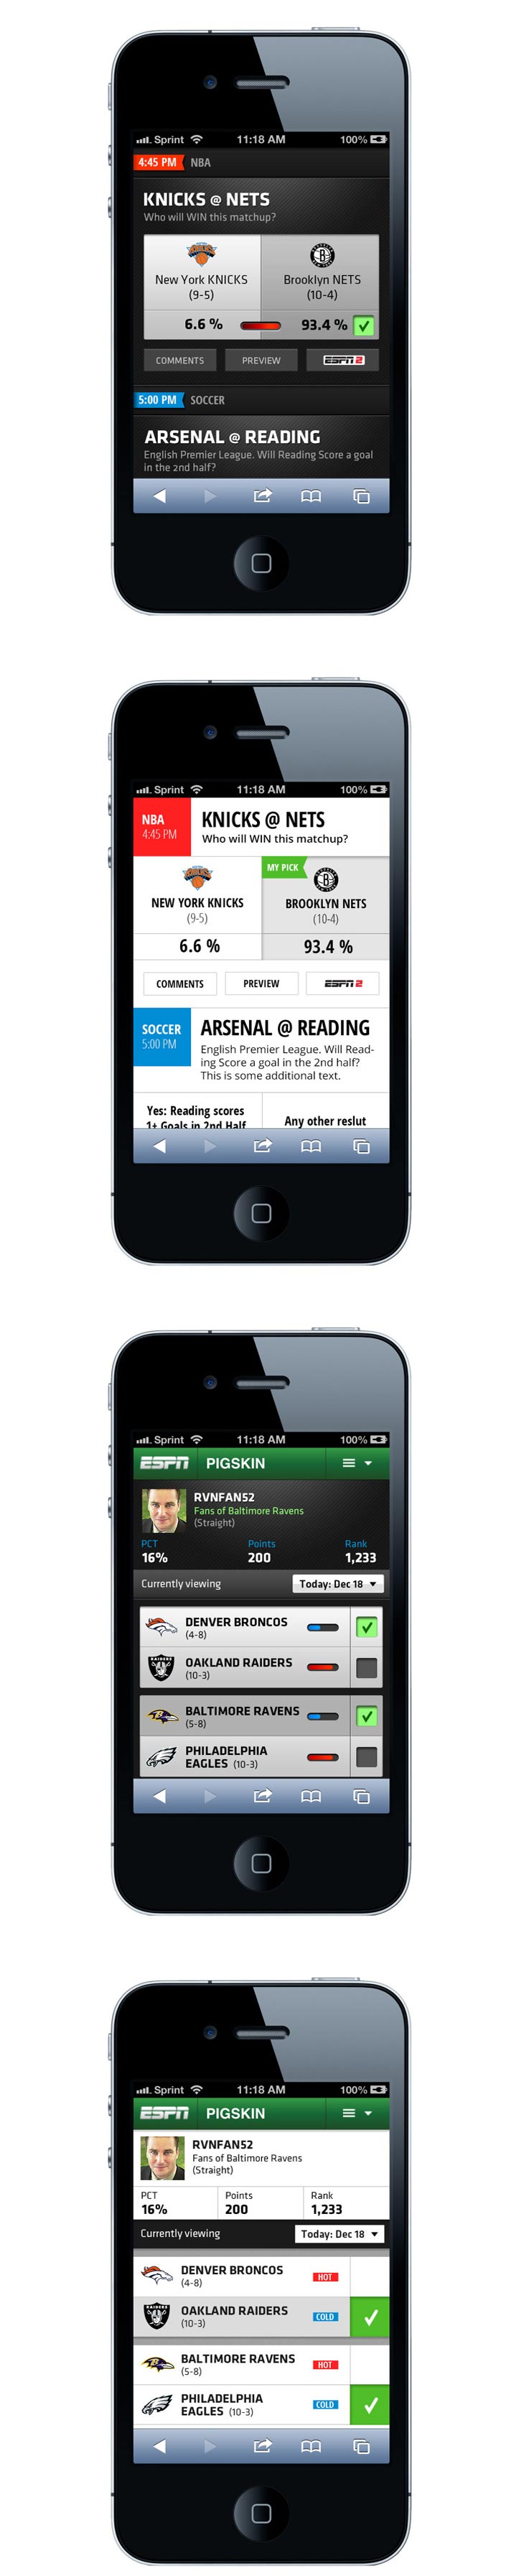 ESPN Mobile Apps